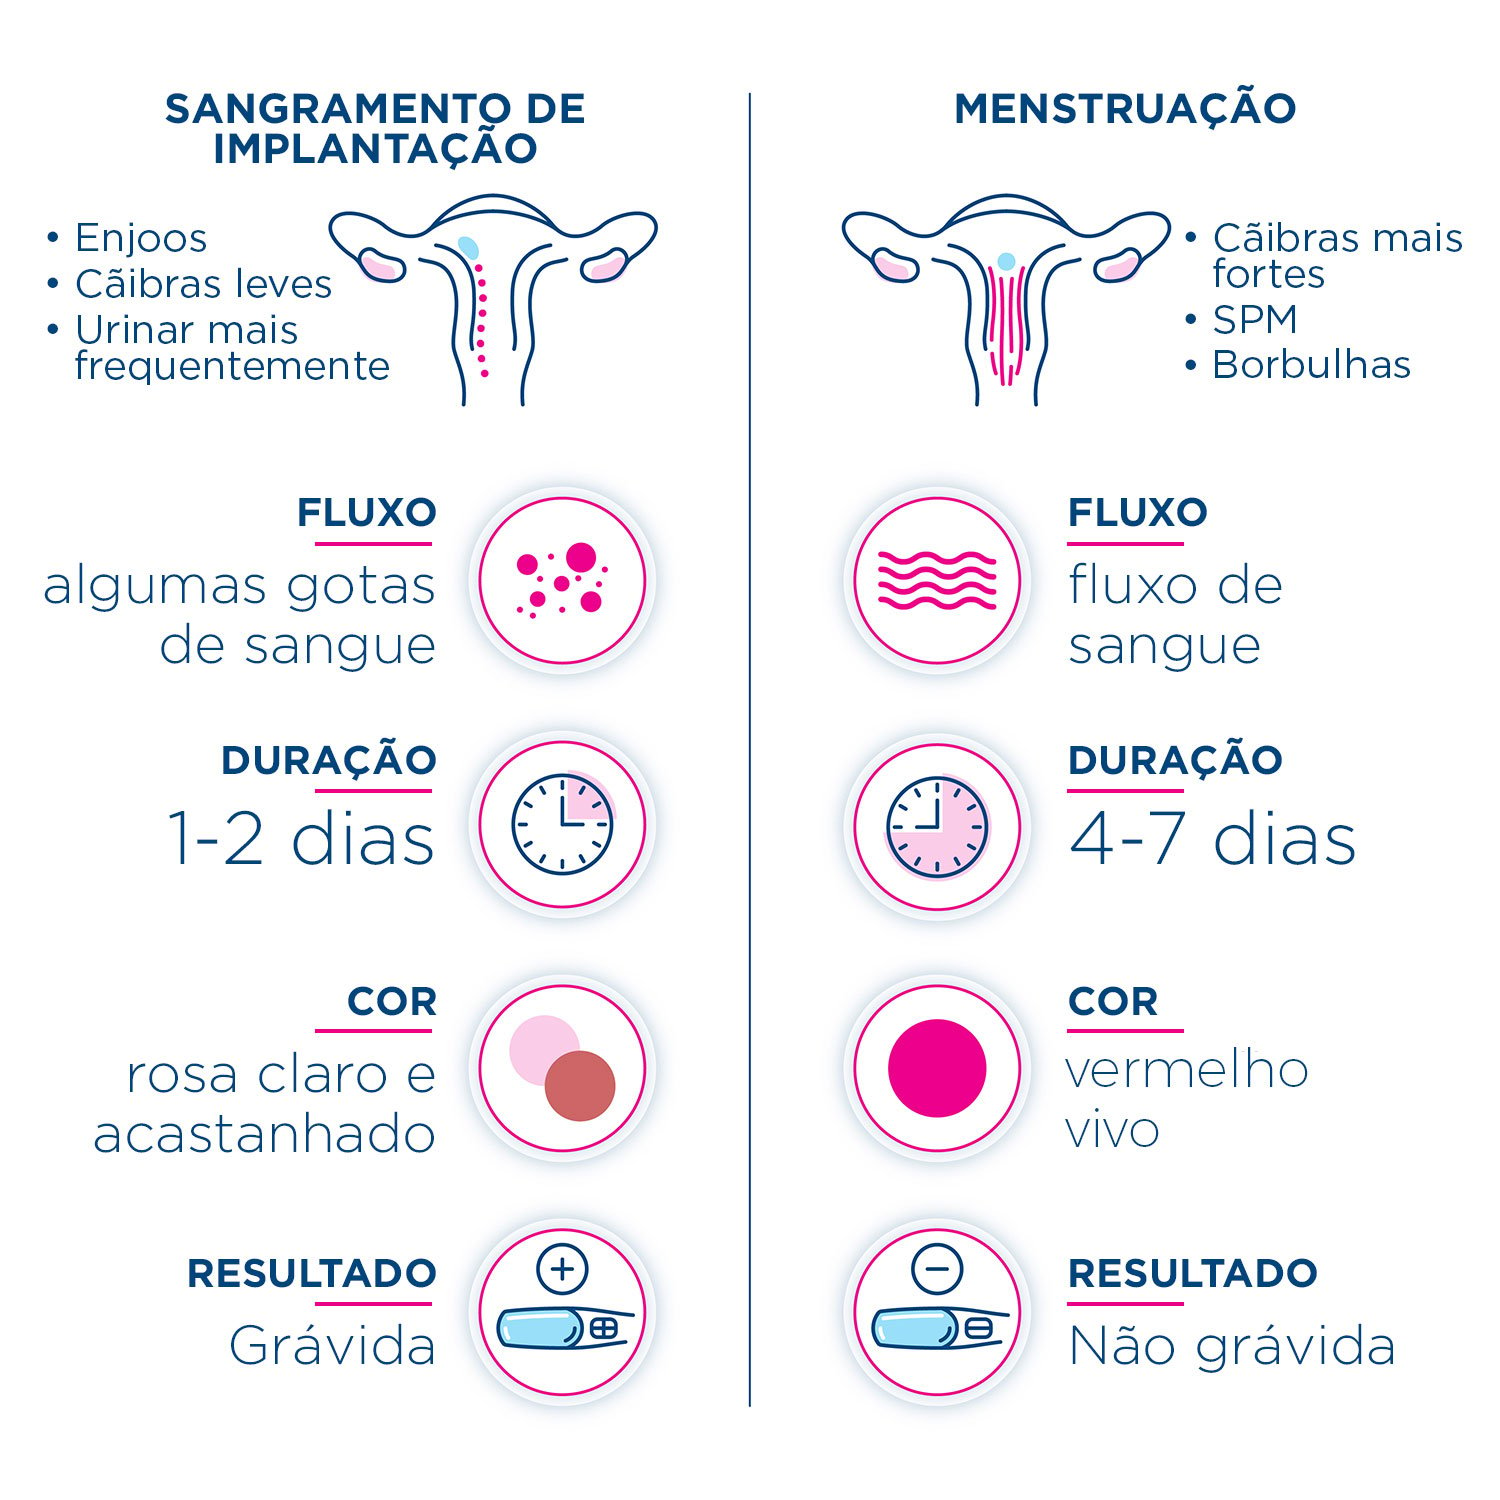 Infográfico comparando os sinais e sintomas para dizer a diferença entre sangramento de implantação e seu período